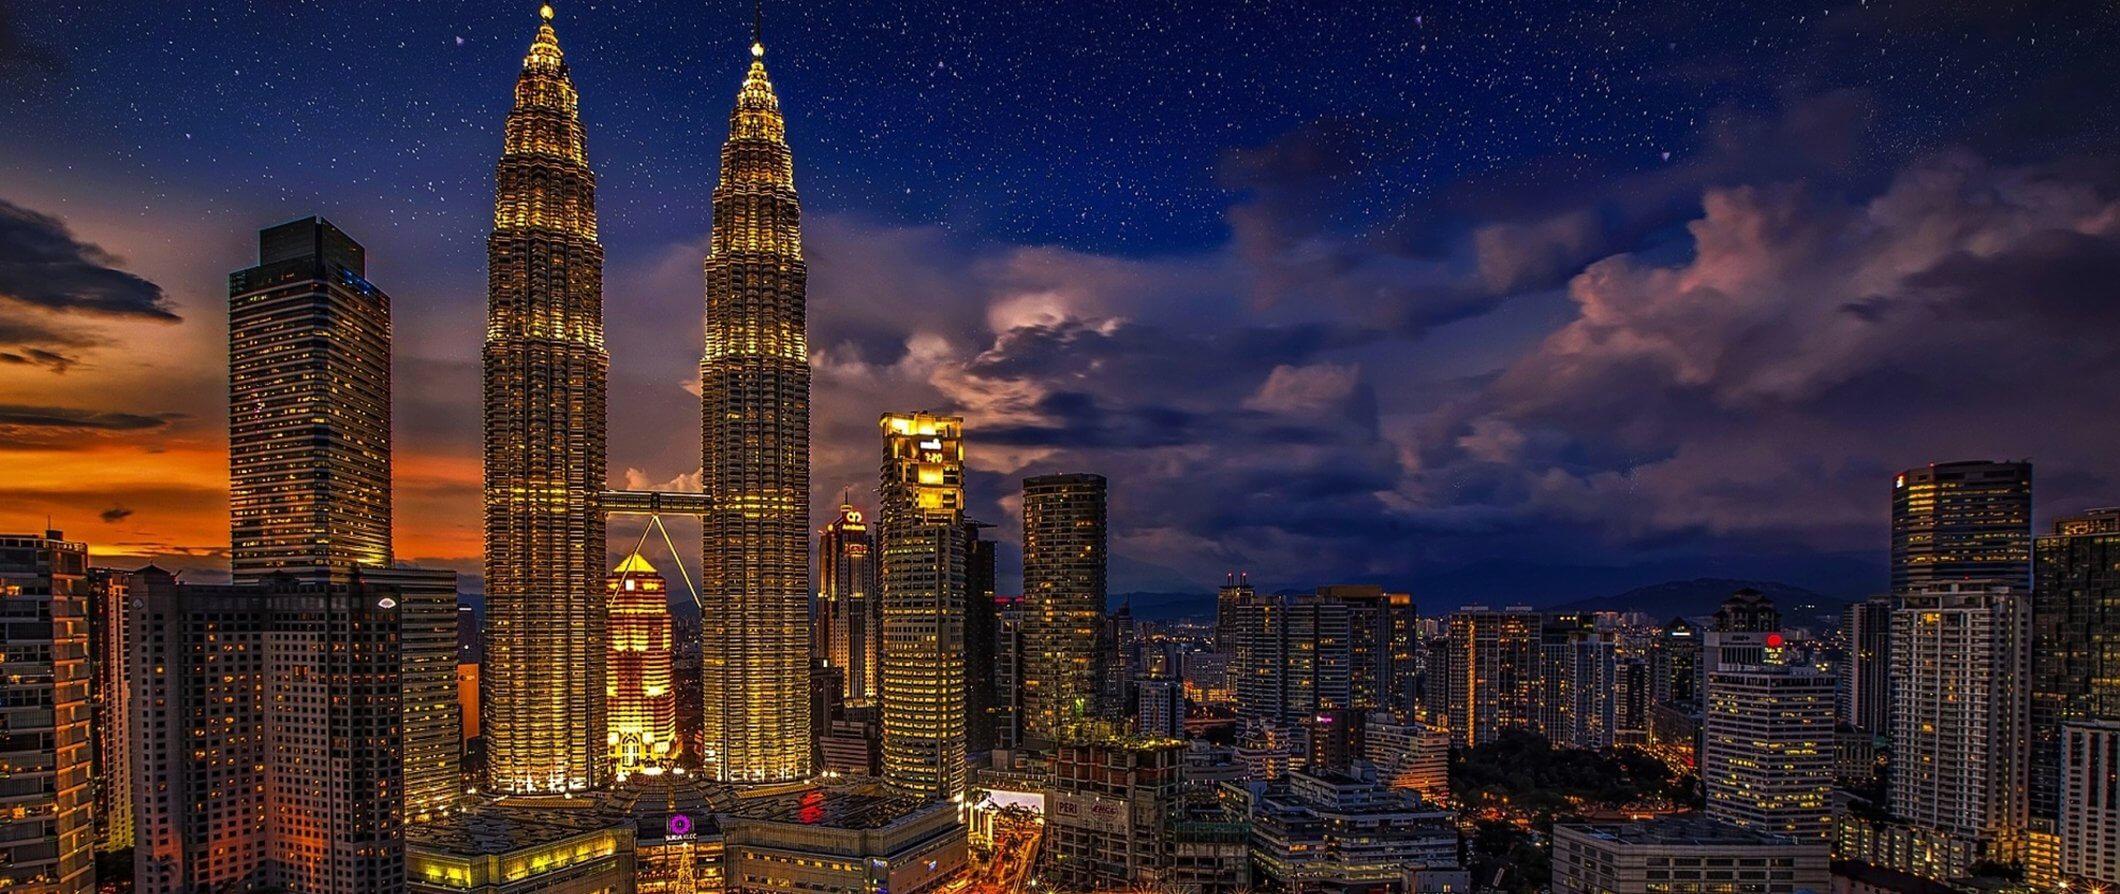 Impressionante horizonte de Kuala Lumpur iluminado à noite com a Torre Petronas